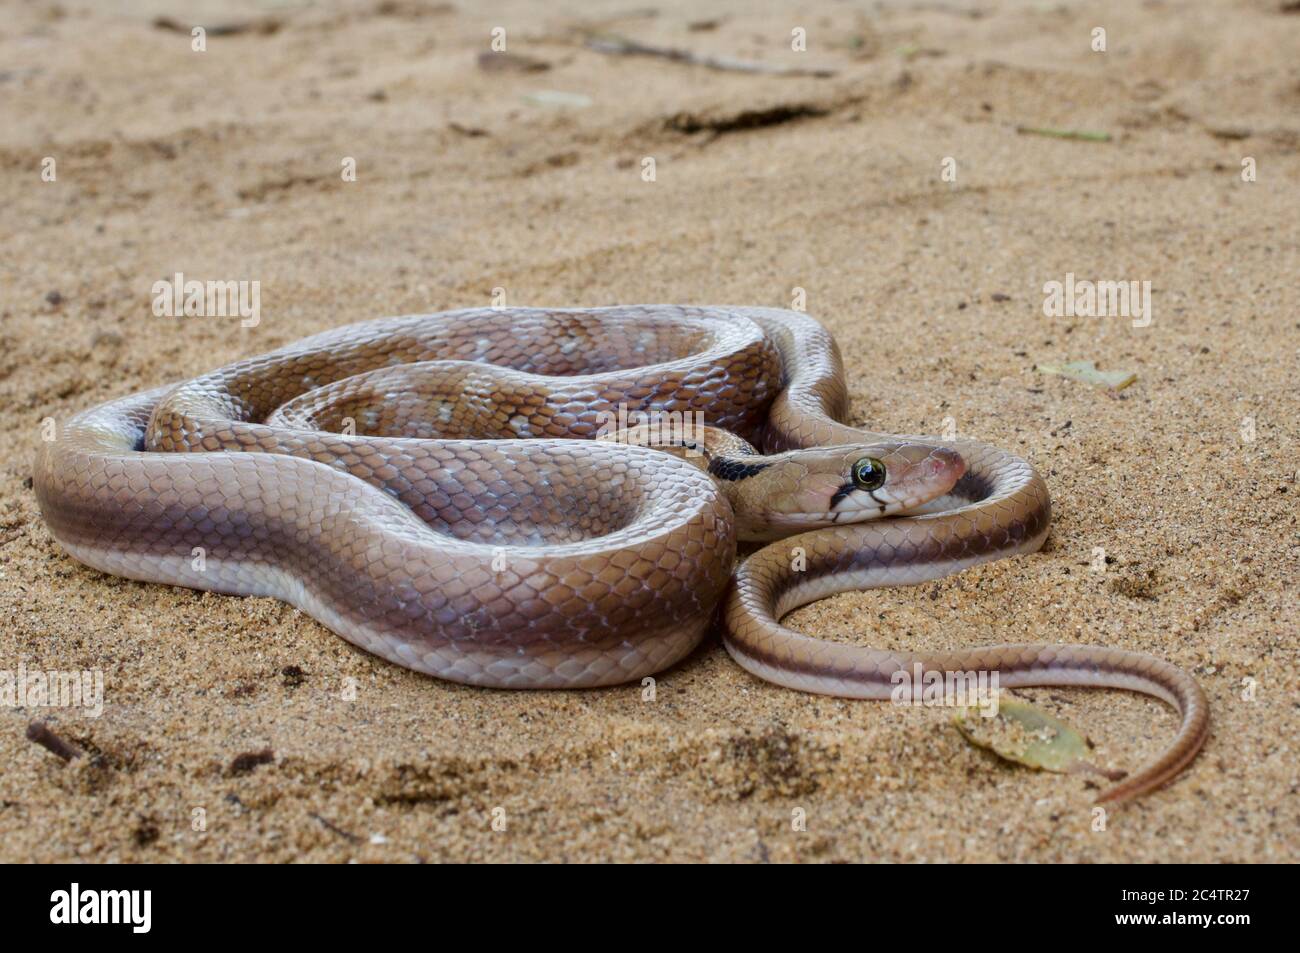 Un magnifique serpent à bijoux (Coelognathus helena) sur un terrain sablonneux près du parc national de Yala, Sri Lanka Banque D'Images